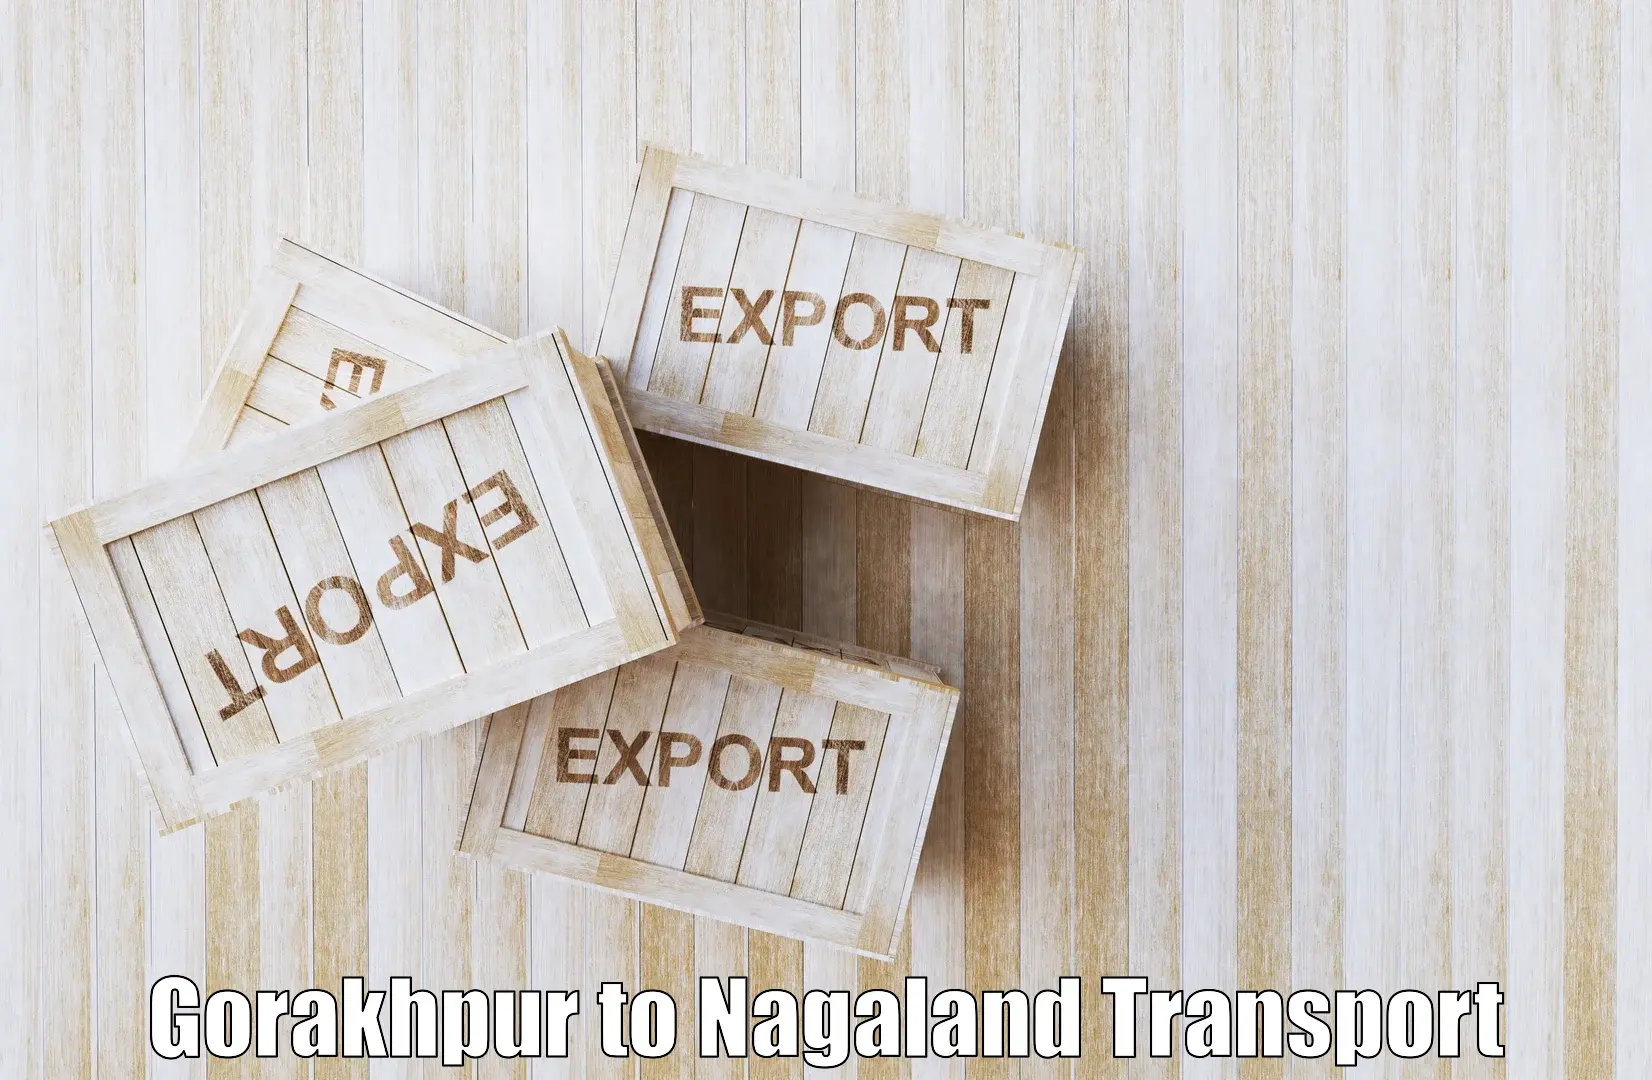 Air cargo transport services Gorakhpur to Nagaland